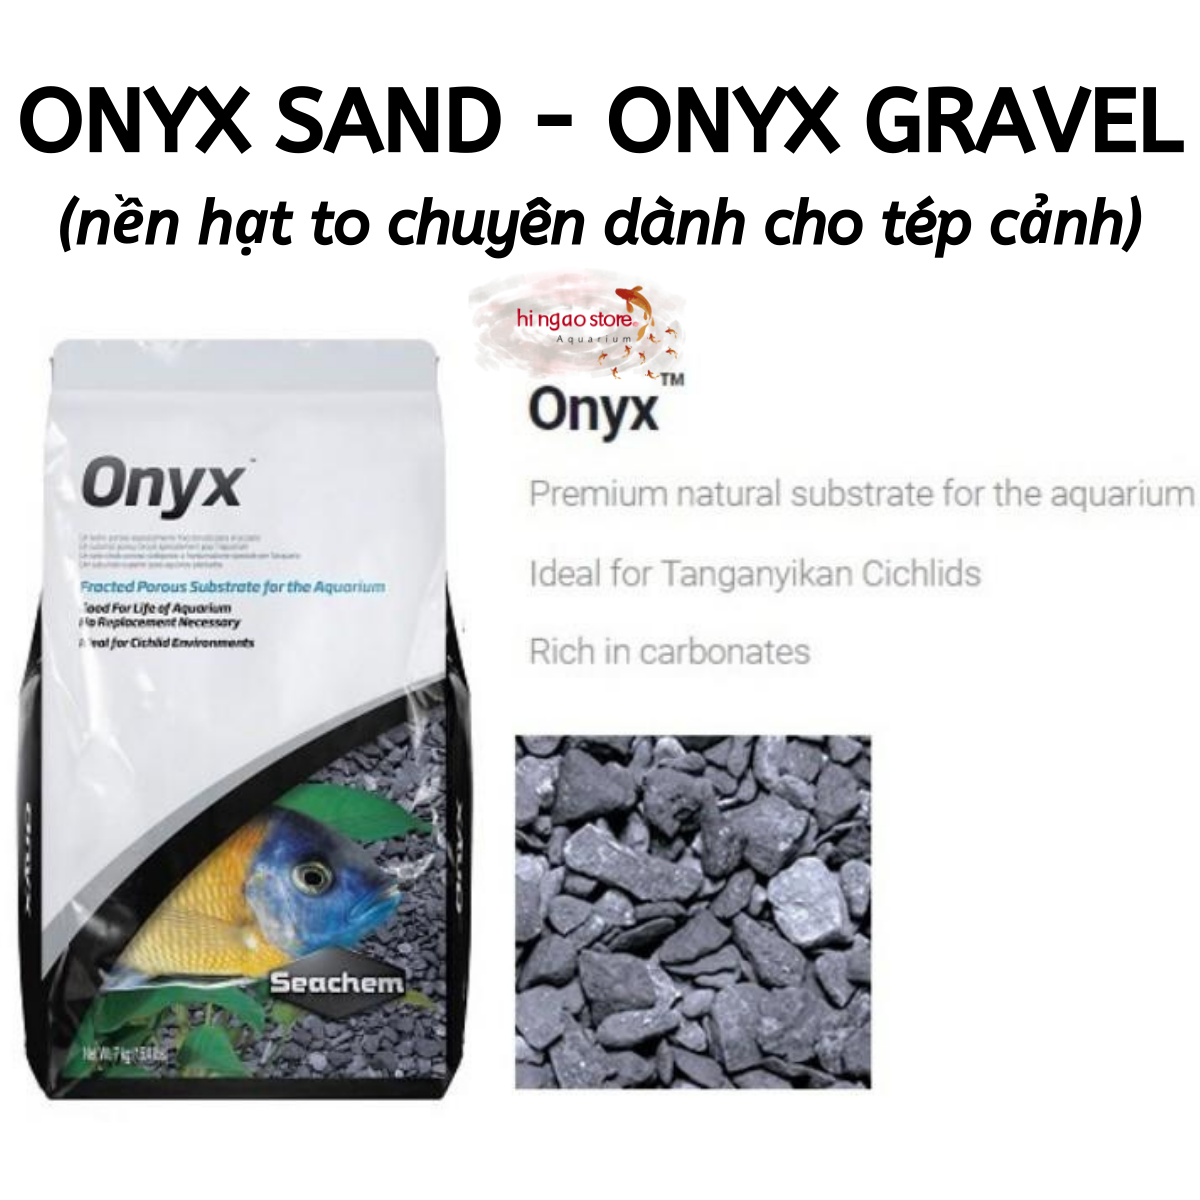 Nền Onyx Sand - Onyx Gravel nền chuyên chơi tép màu, tép lạnh, tép sula (chiết) - Phụ kiện tép cảnh | Hingaostore.